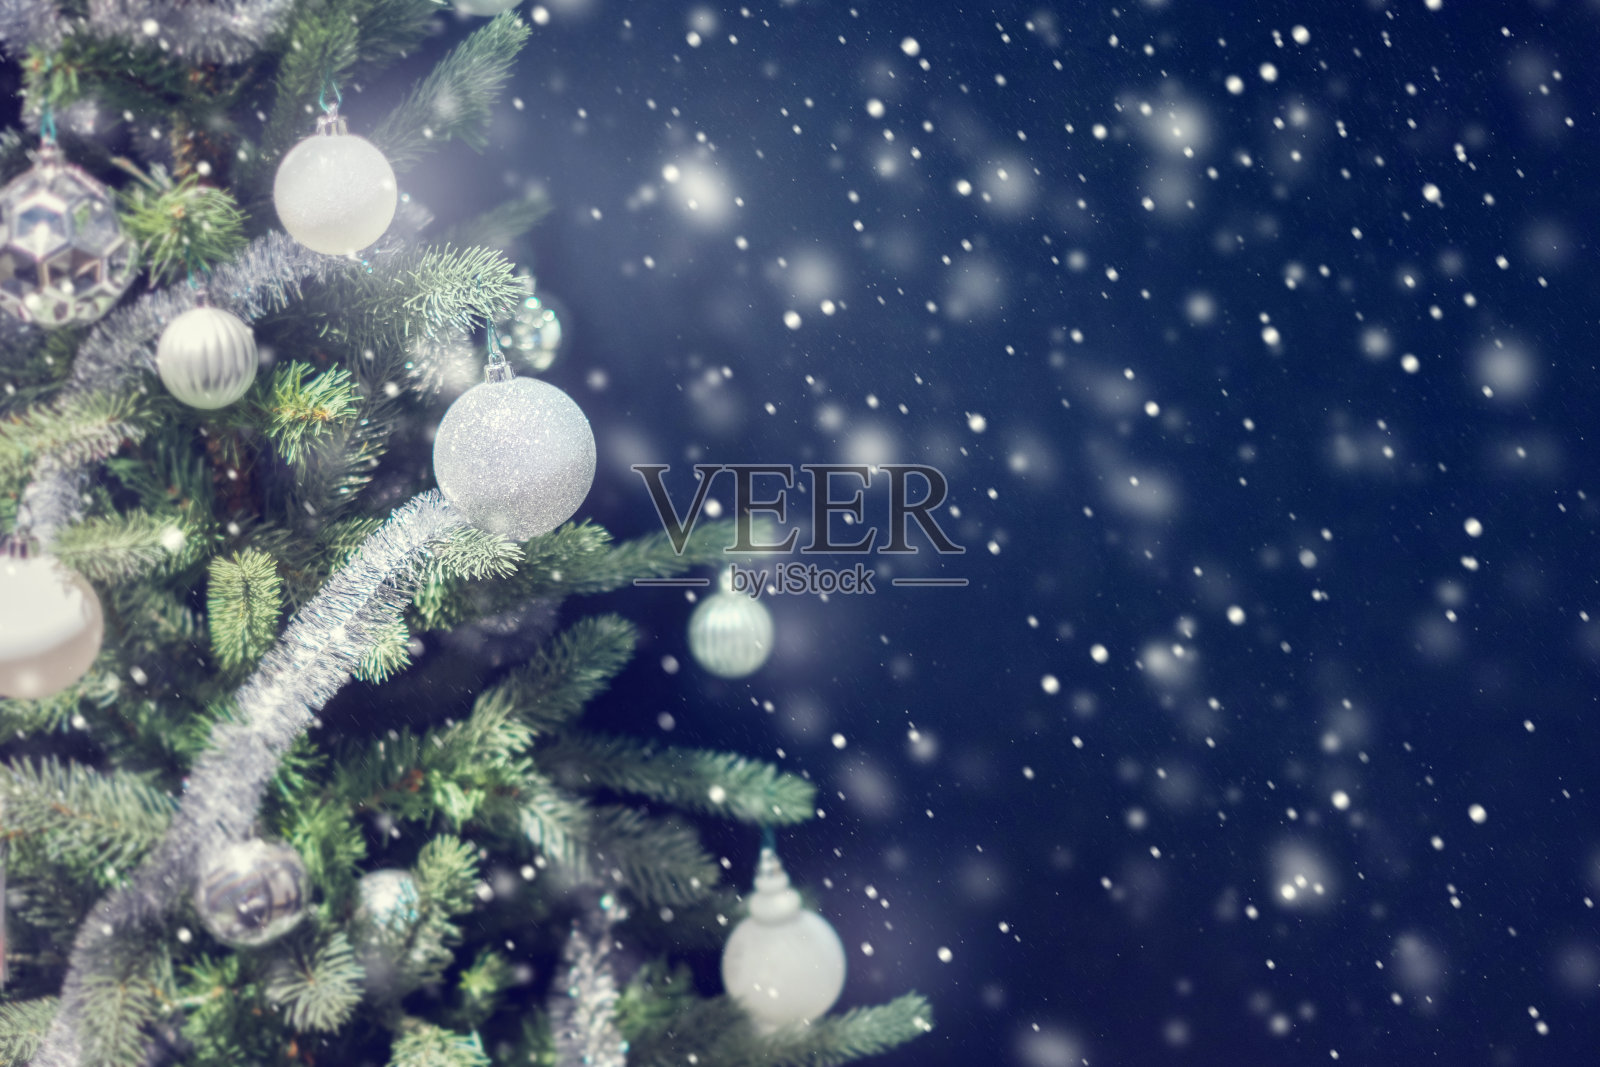 银色小玩意儿挂在圣诞树上的特写。设计模板素材